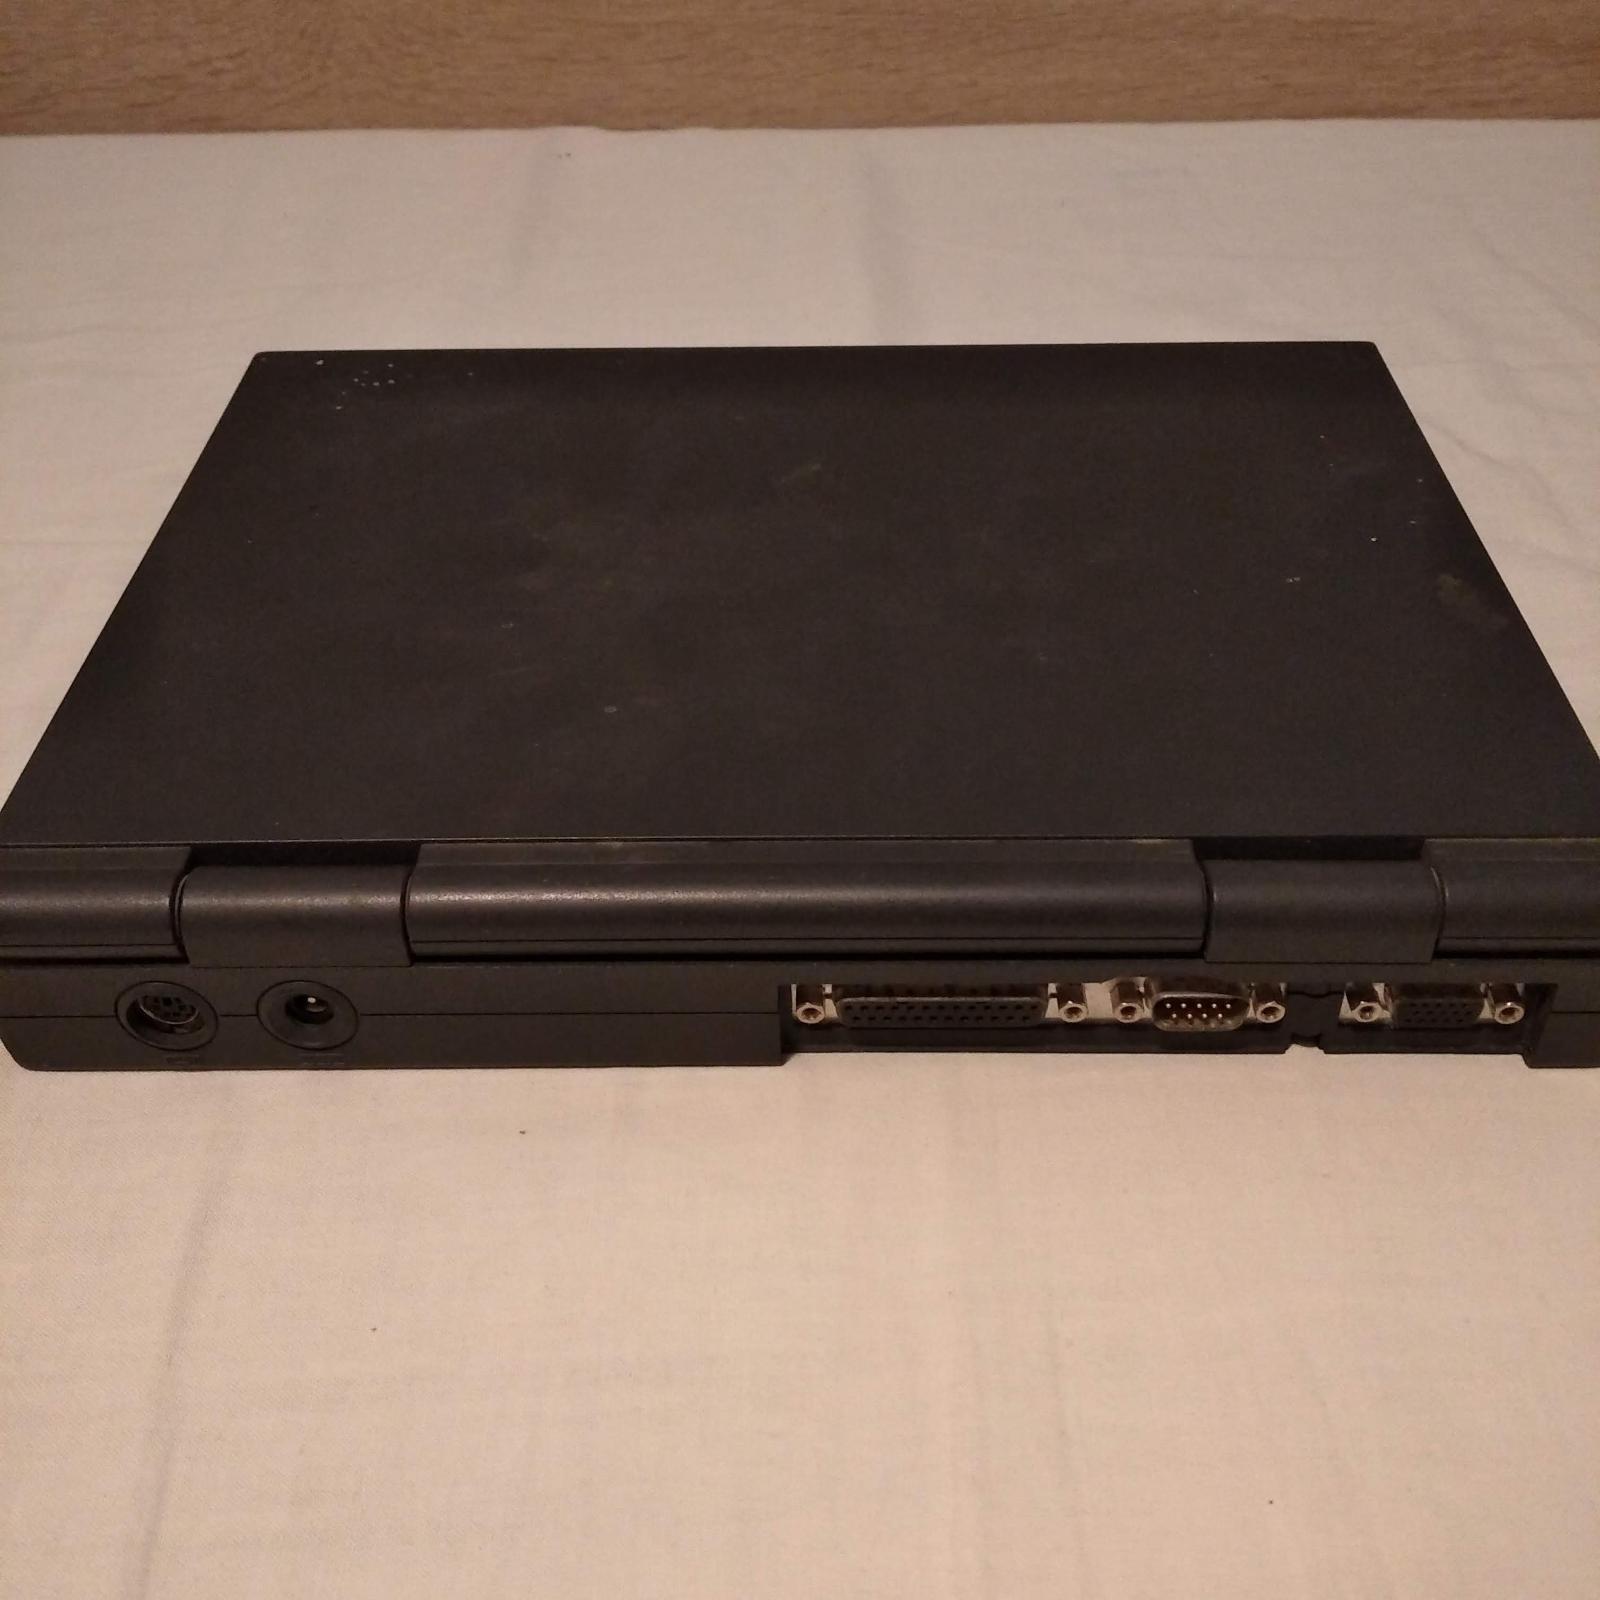 notebook 486dx4  - Počítače a hry